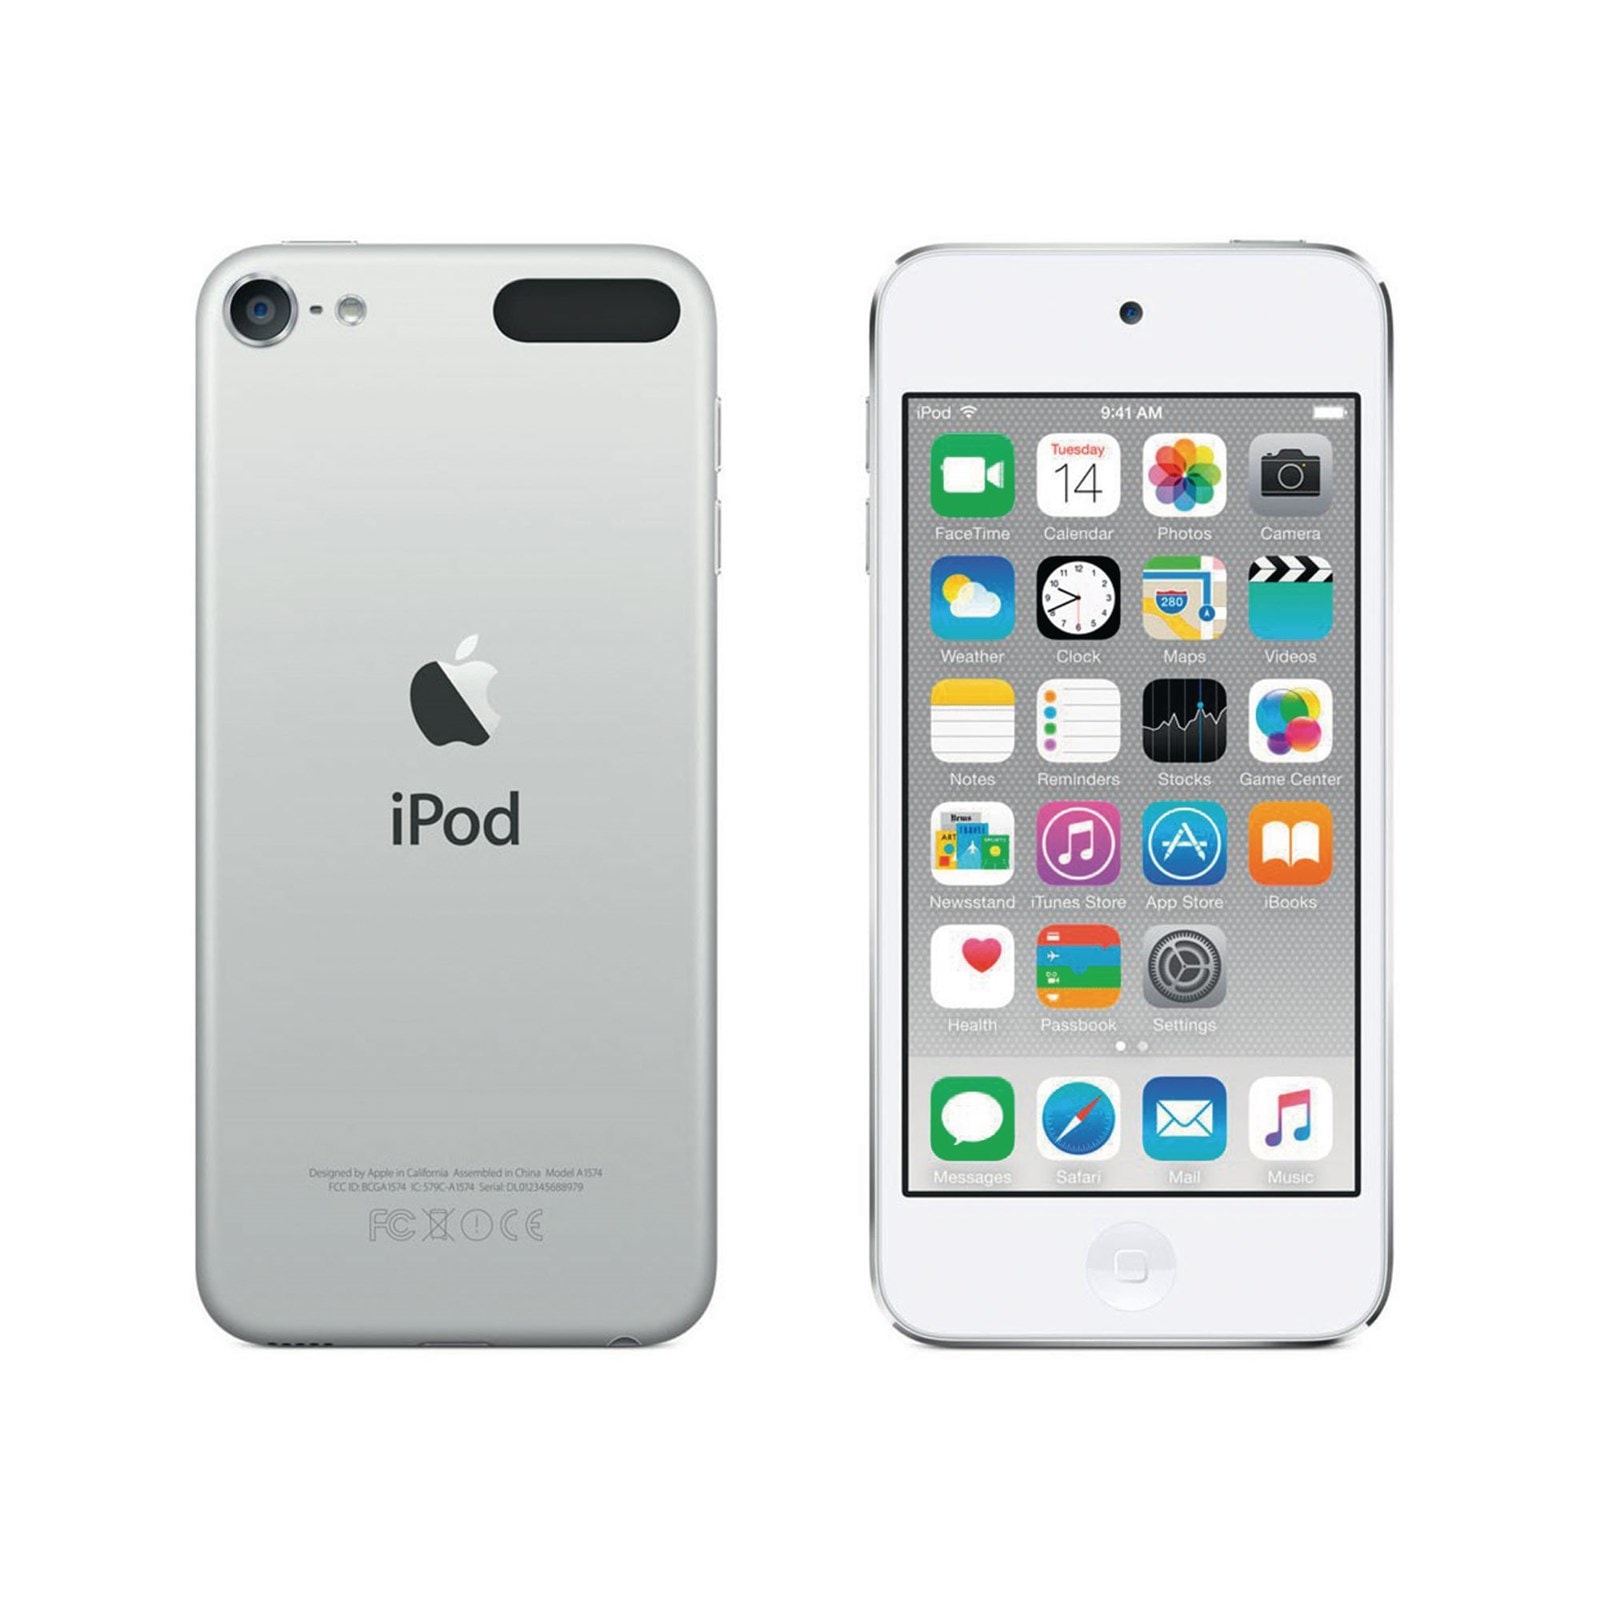 iPod touch アイポッドタッチ アップル オンラインストア Apple 購入 新型 発売日 ゲーム機